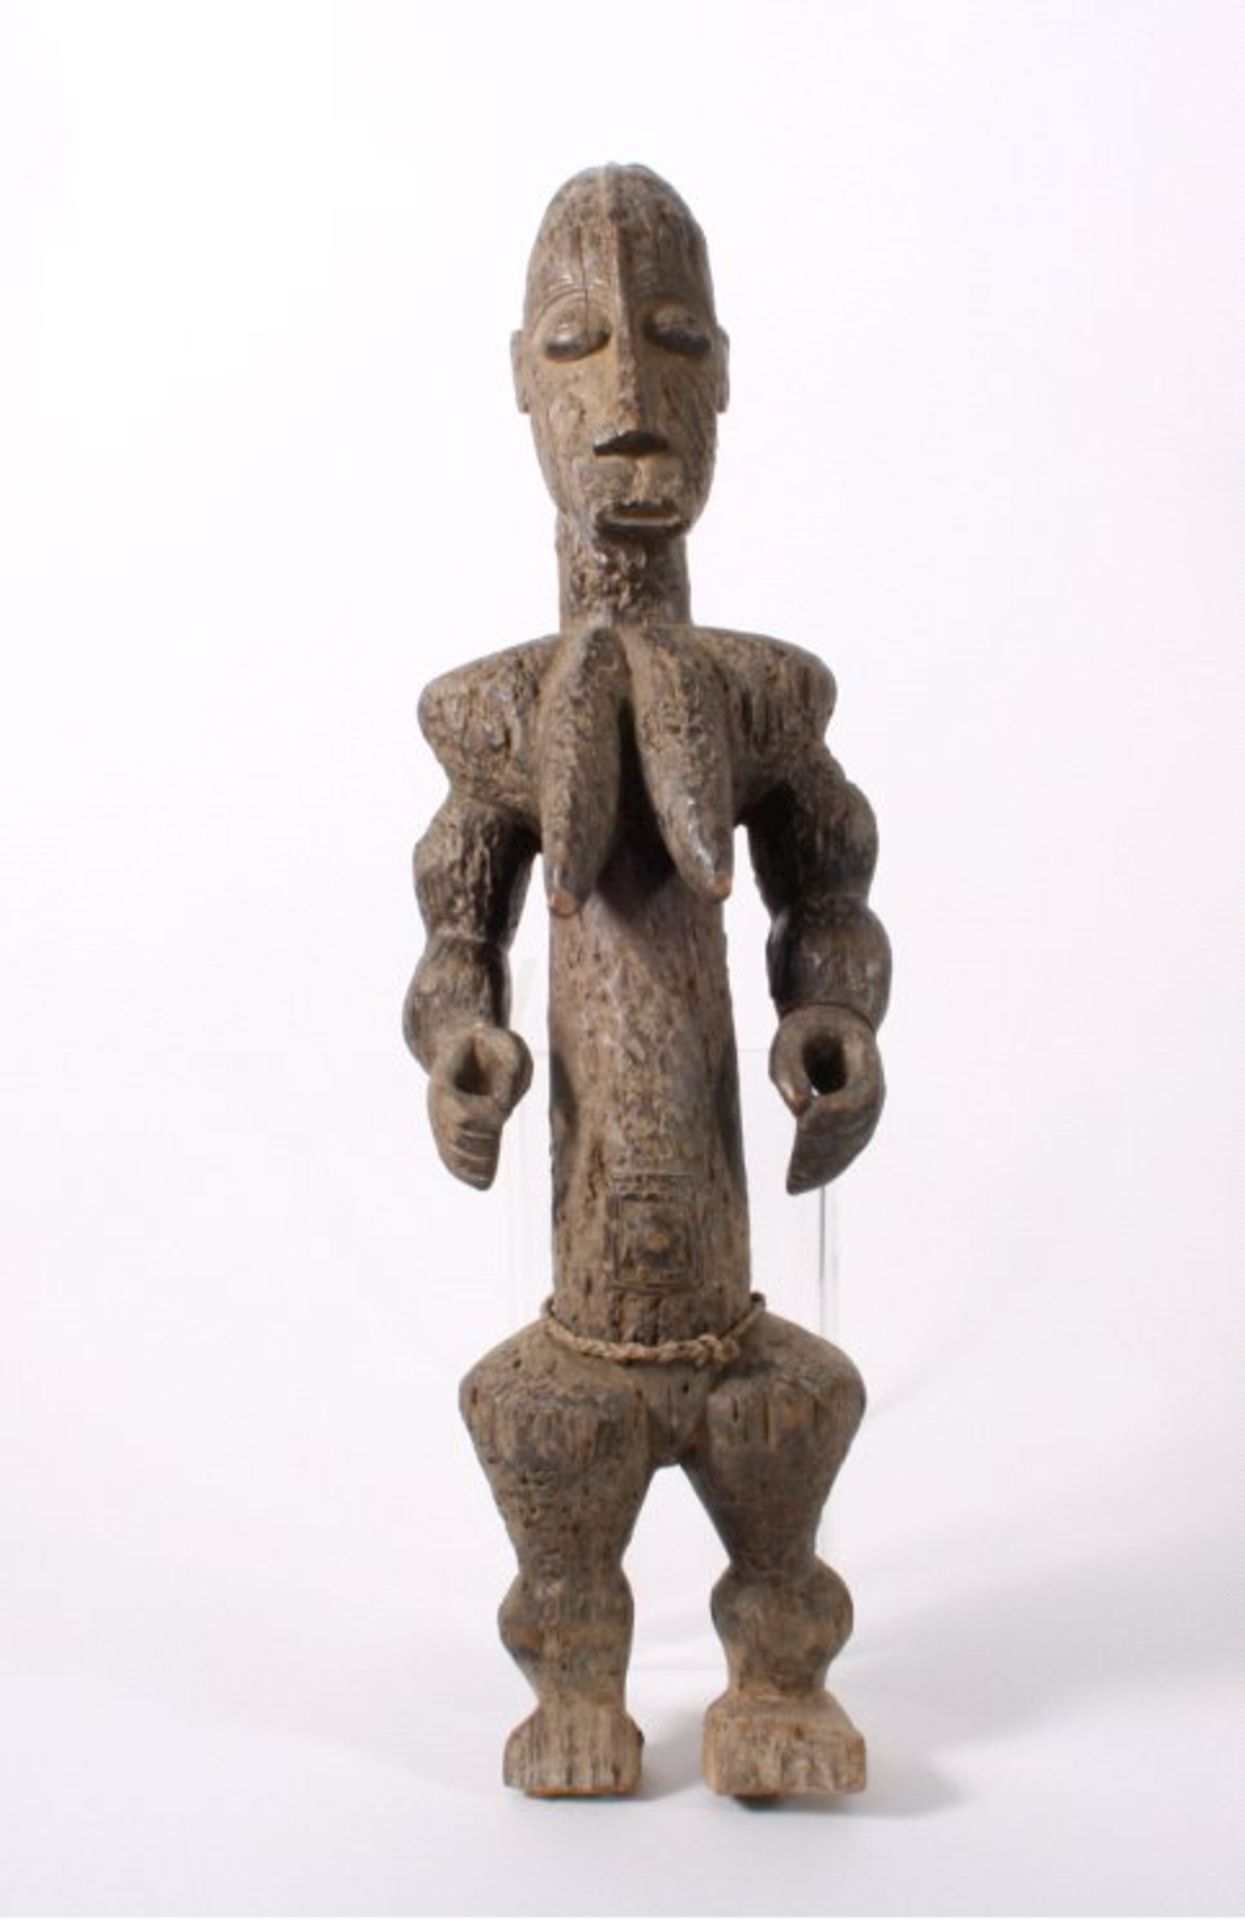 Große Ibeji Figur, Yoruba Volk, Nigeria, Anfang 20. Jh.Stehende weibliche Figur mit spitzer,